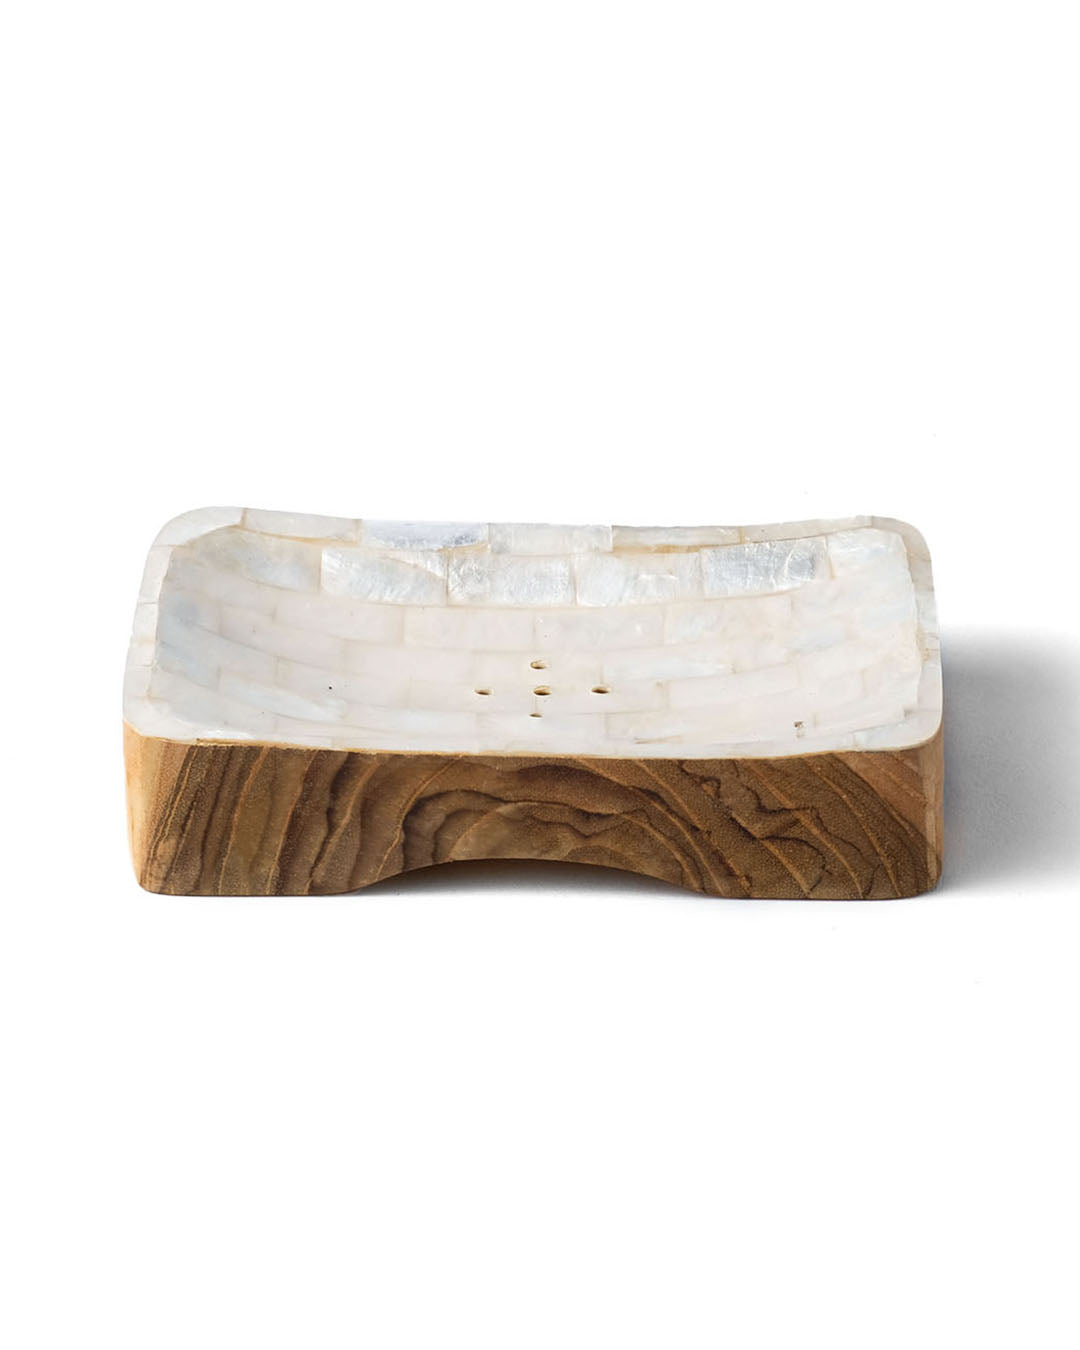 Jabonera de nácar y madera natural con drenaje Muara rectangular, hecho a mano con acabado en blanco y blanco y dorado, largo 12 cm ancho 7,5 cm, origen Indonesia